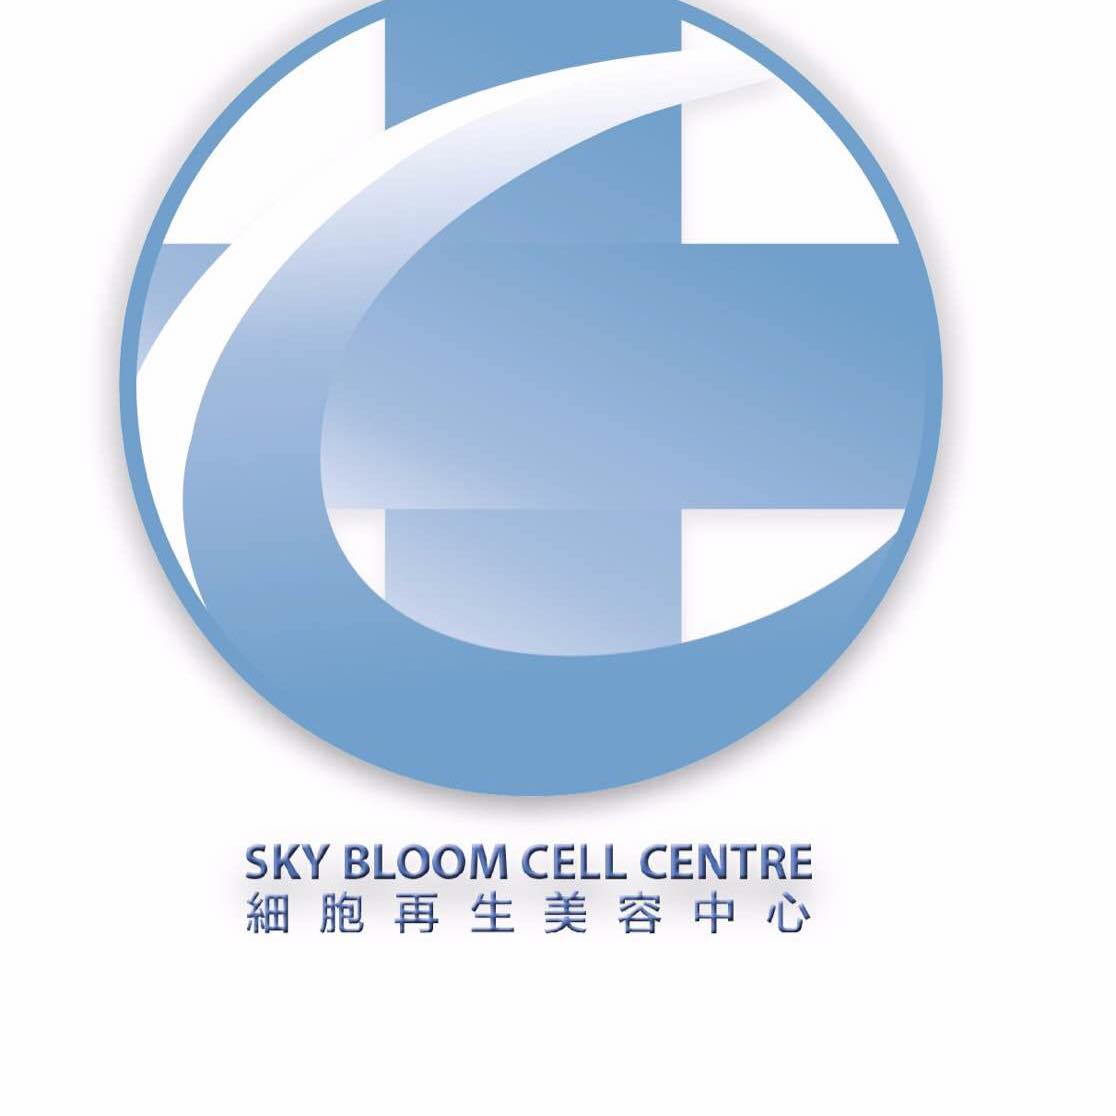 美容院 Beauty Salon: Sky Bloom Cell Beauty Centre 細胞再生美容中心